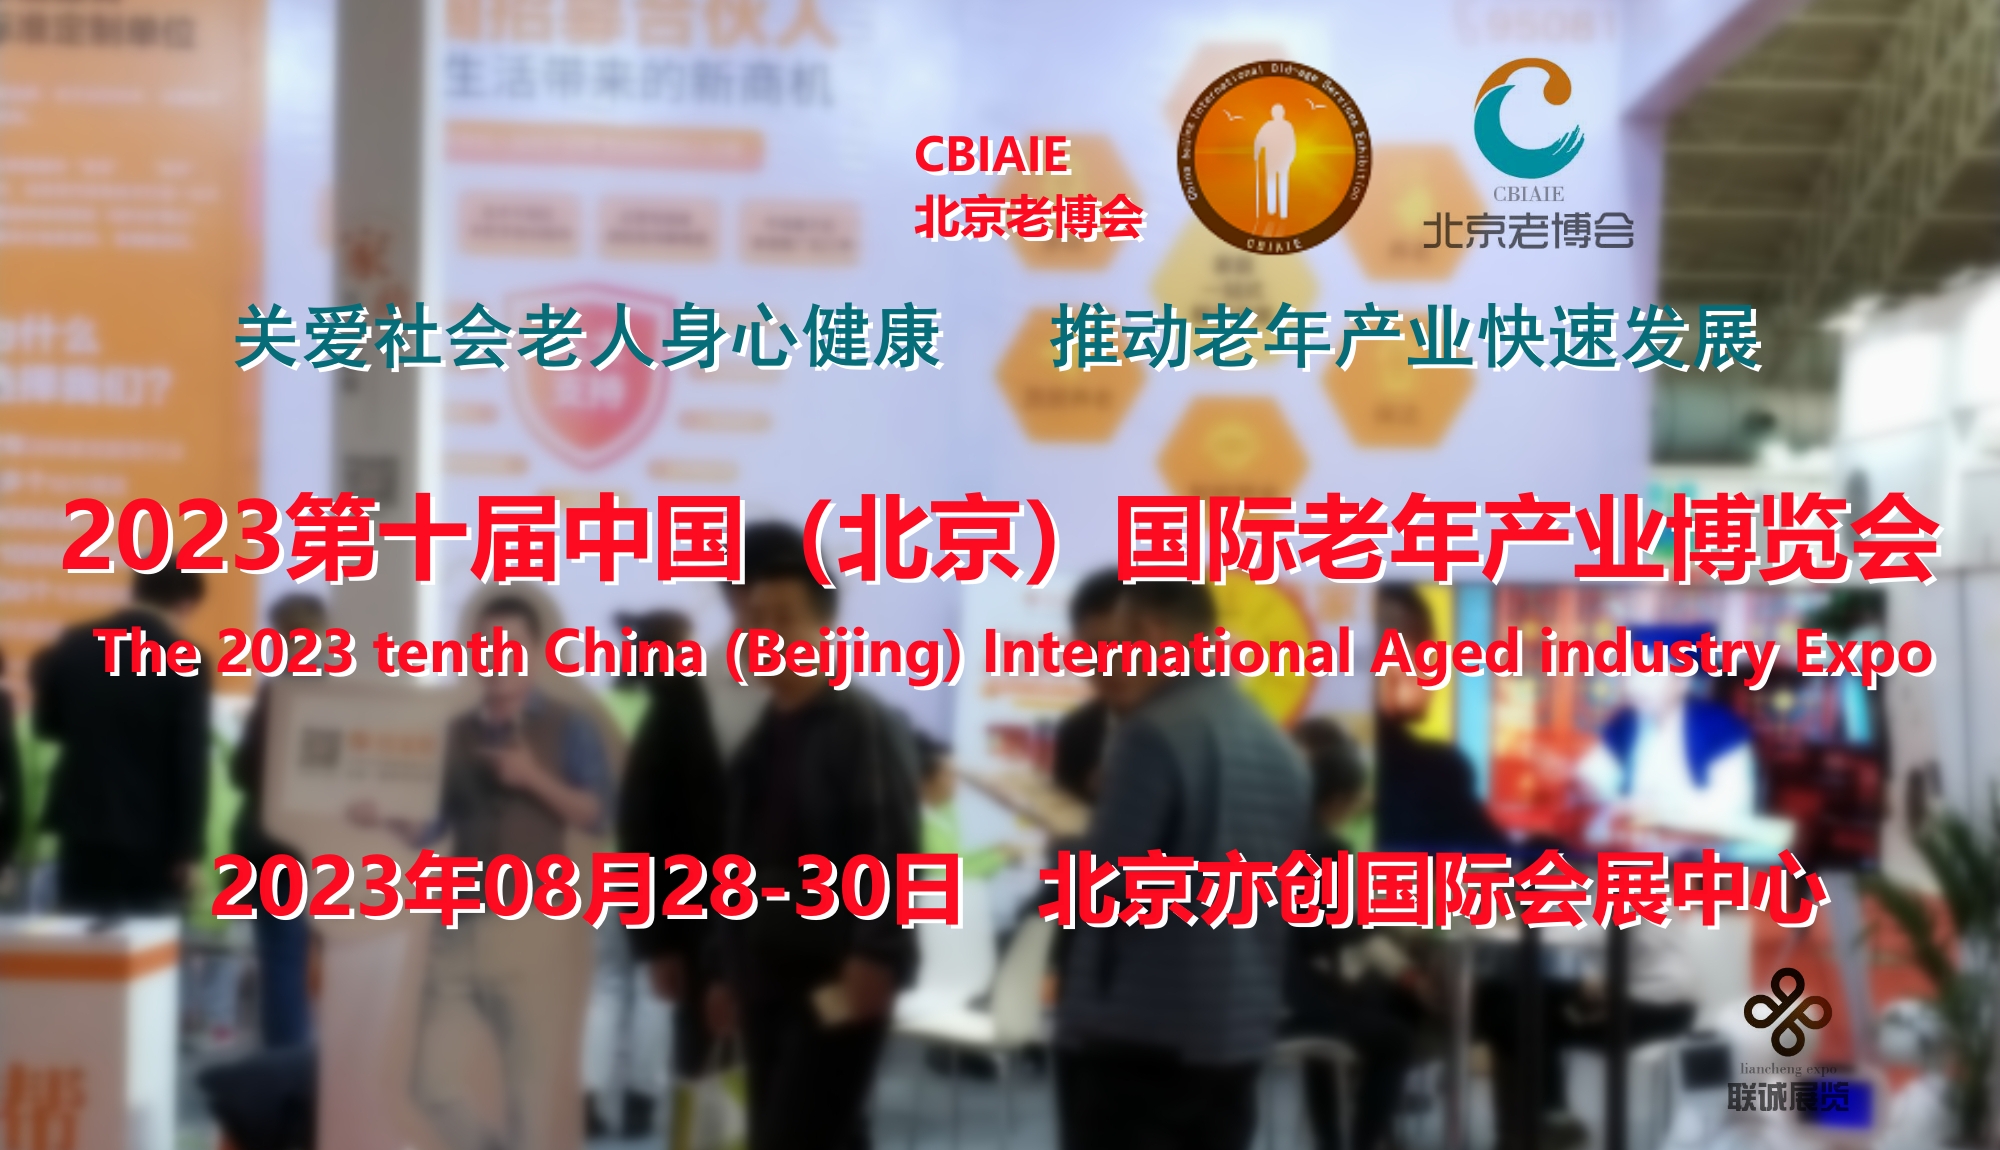 第十届CBIAIE北京老博会，将于8月28日在京盛大举办